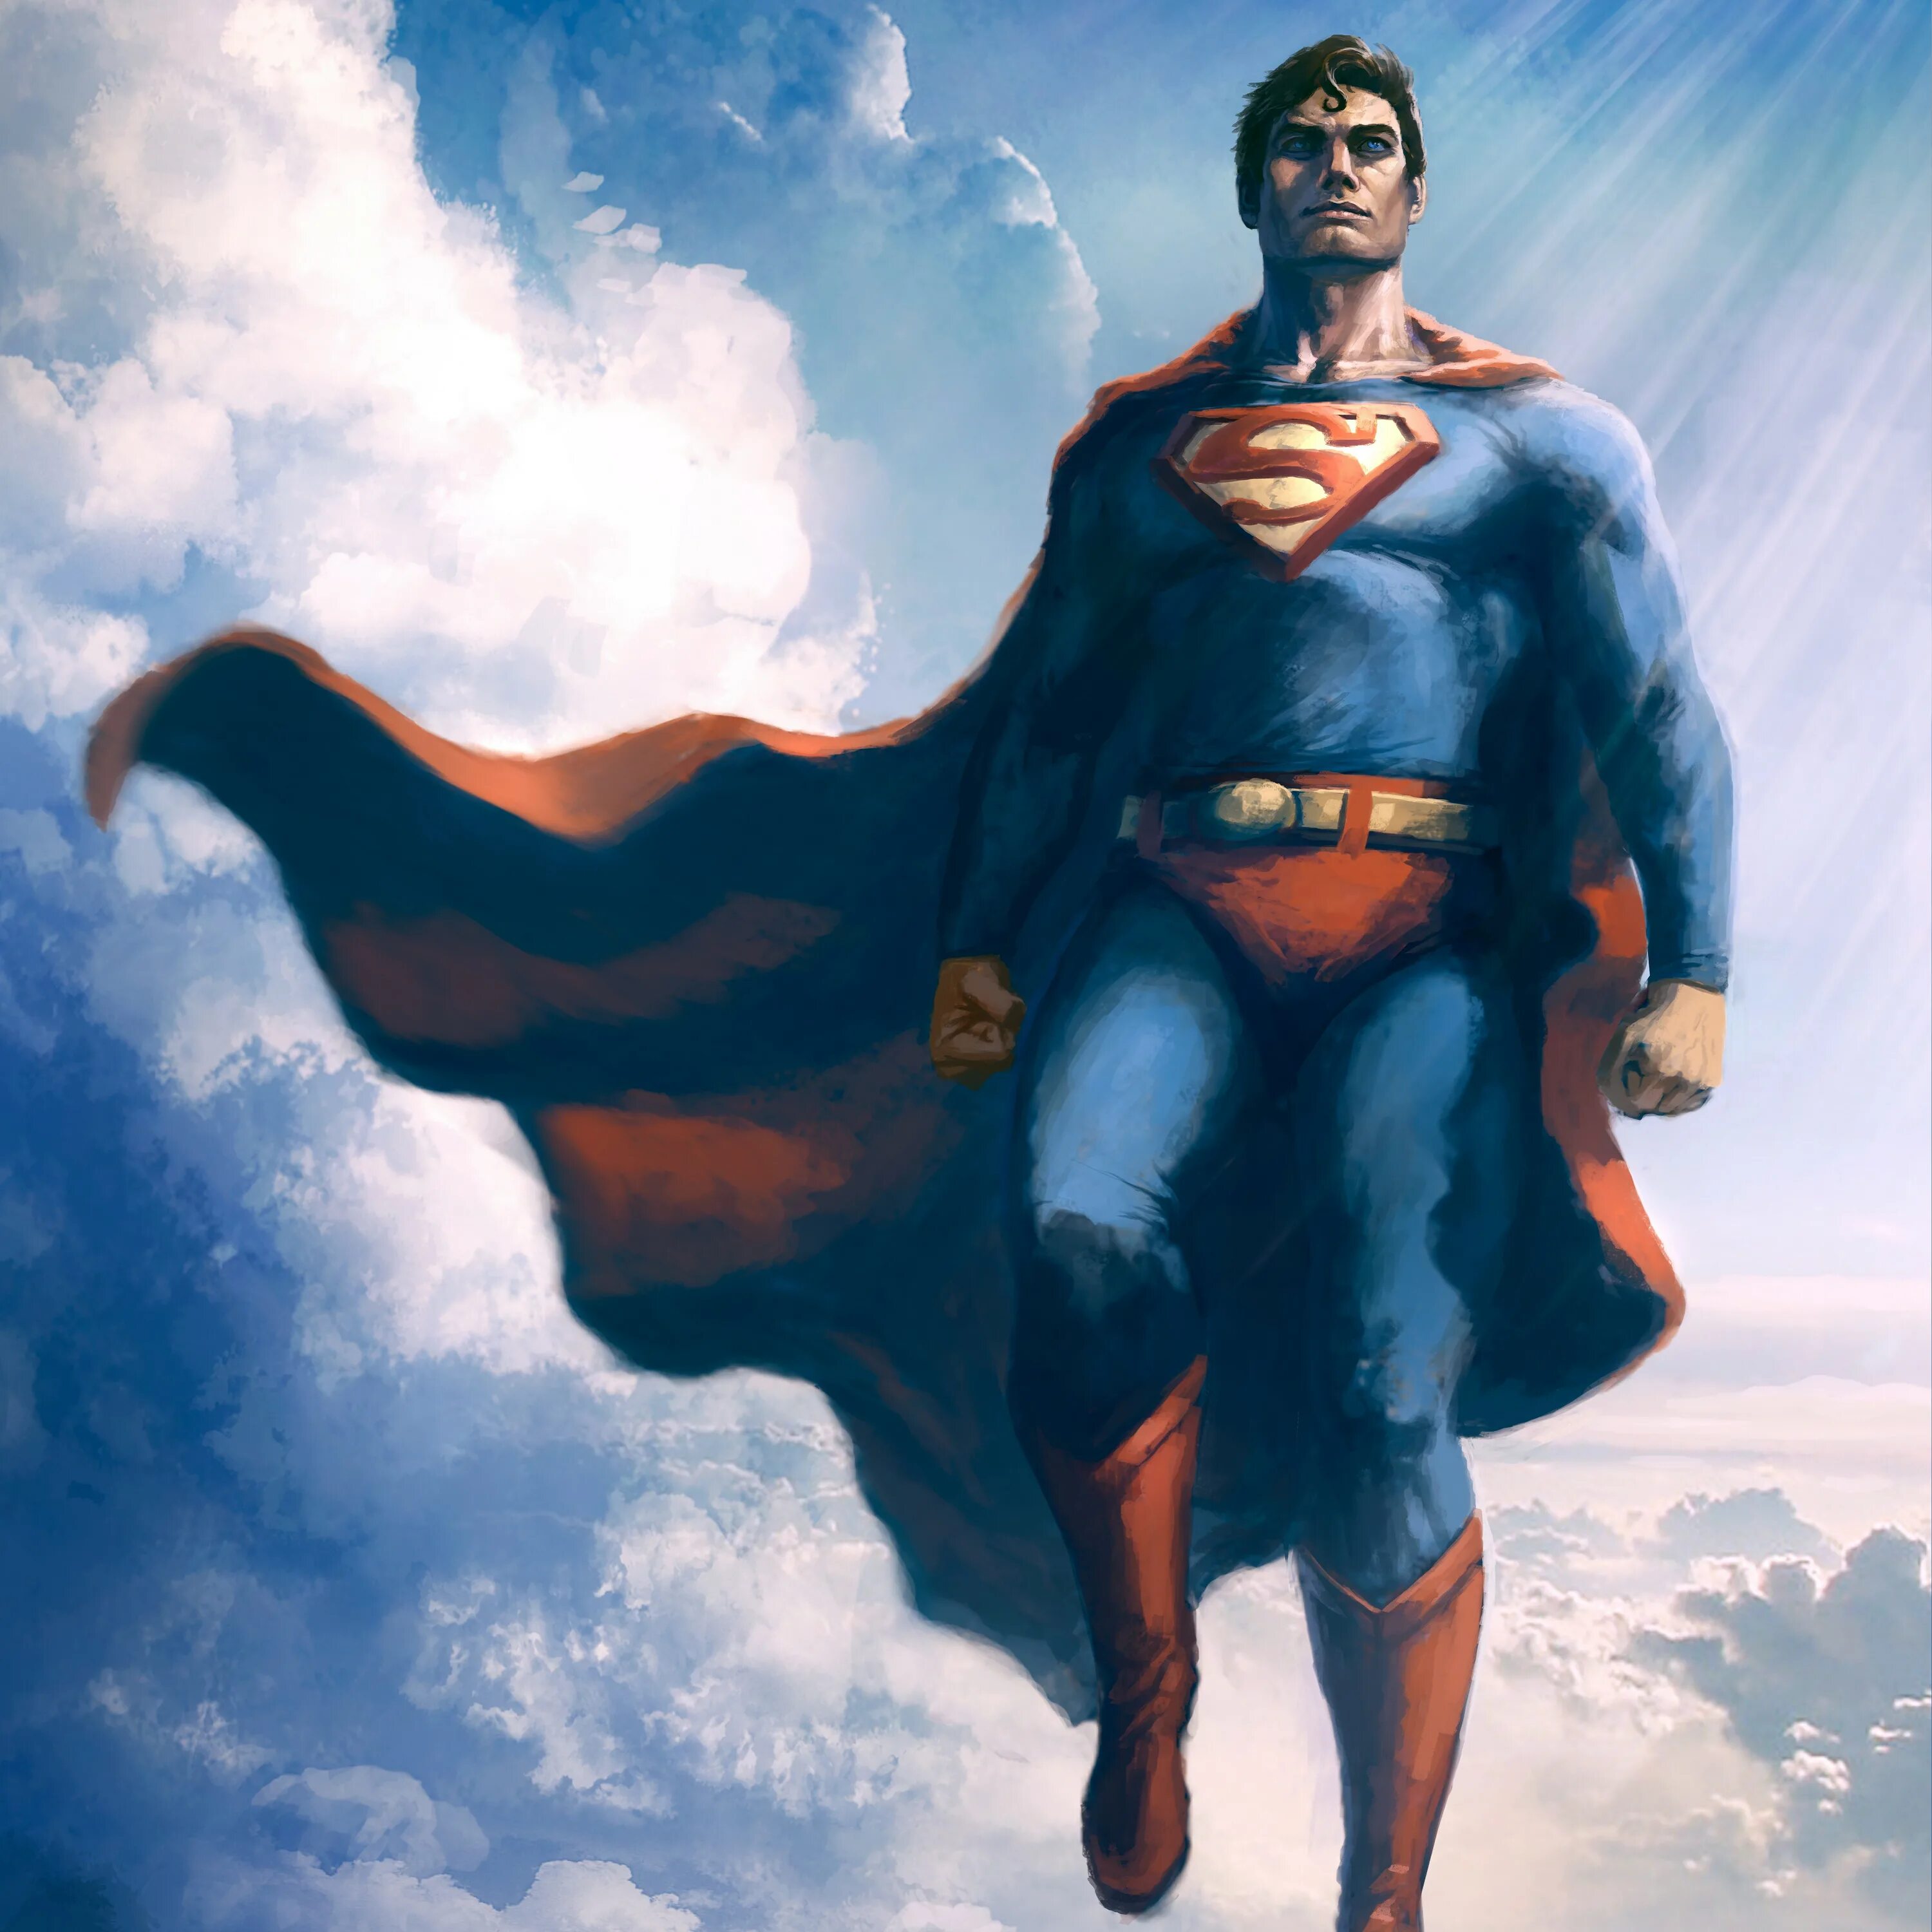 Кларк Кент Супермен. Супермен Макс Флейшер. Брюс Уэйн (Бэтмен), Кларк Кент (Супермен). Супермен 60х. Картинки супер героев